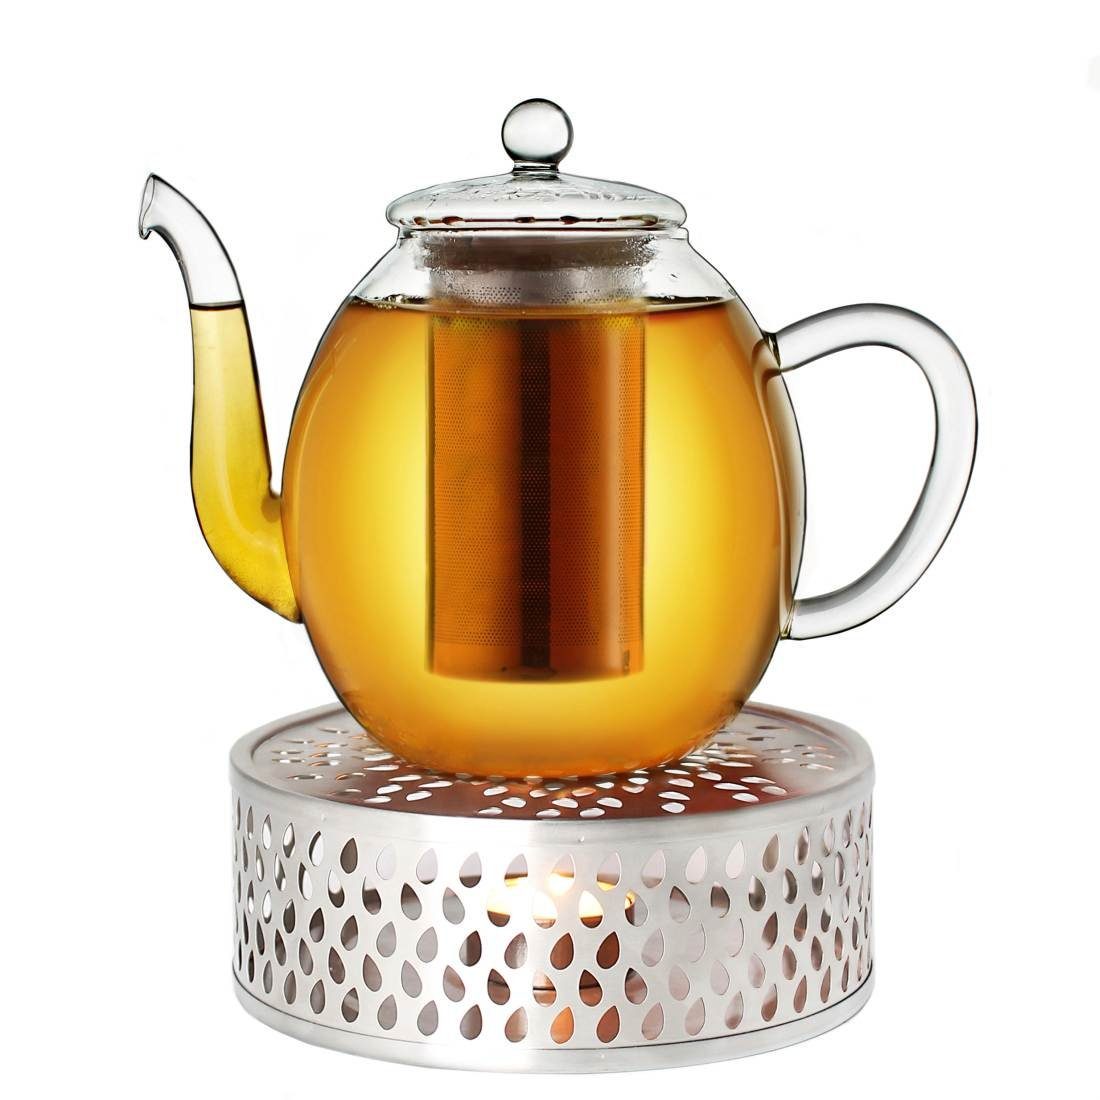 Creano Teekanne Creano Teekanne aus Glas 1,0l + ein Stövchen aus Edelstahl, 3-teilige, 1 l, (Set) | Teekannen